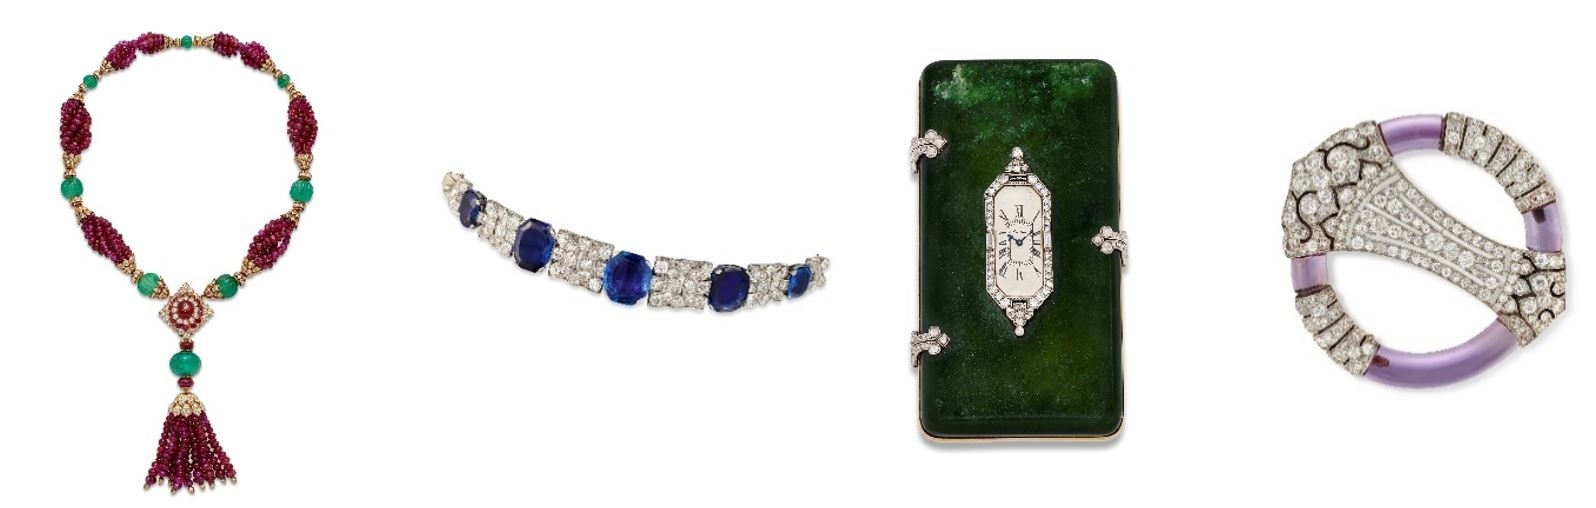 Christie’s London Jewels Auctions